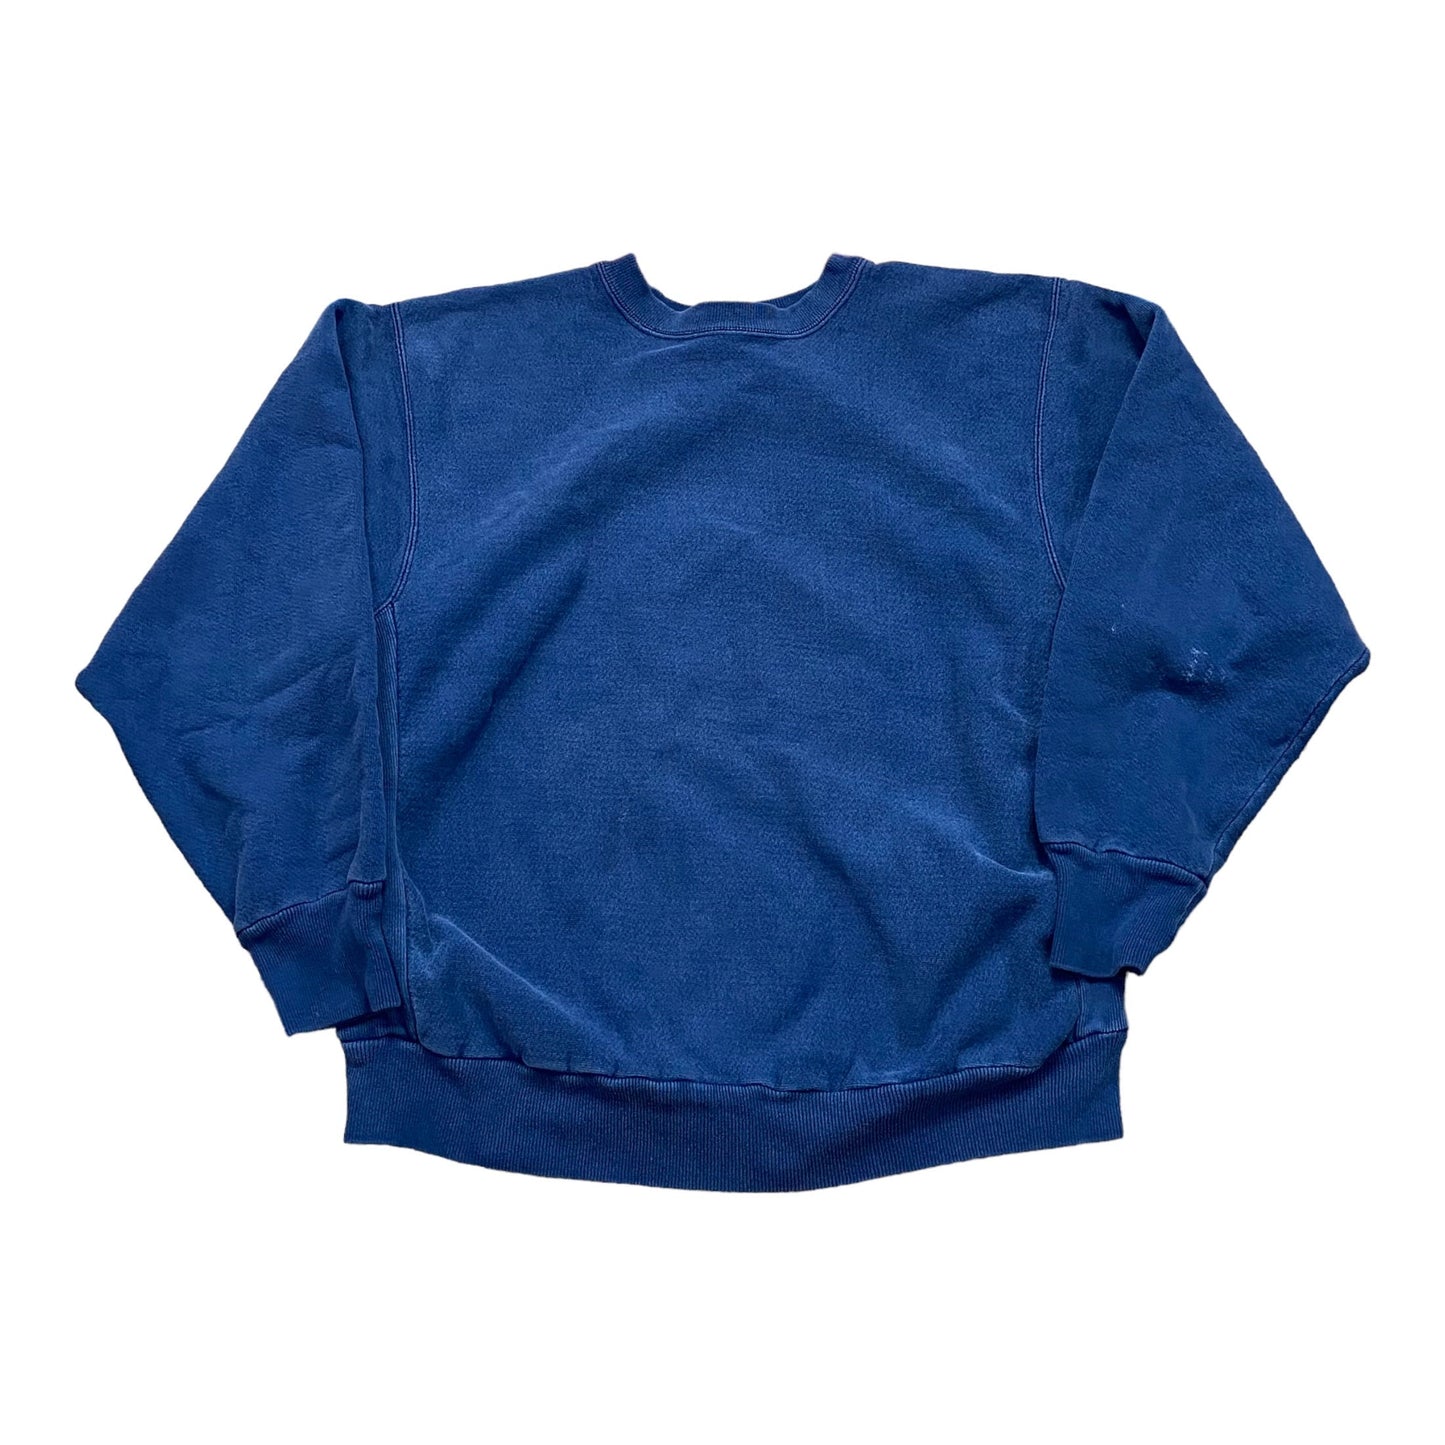 1980s/1990s Famous Sportswear Reverse Weave Style Sweatshirt Made in USA Size L